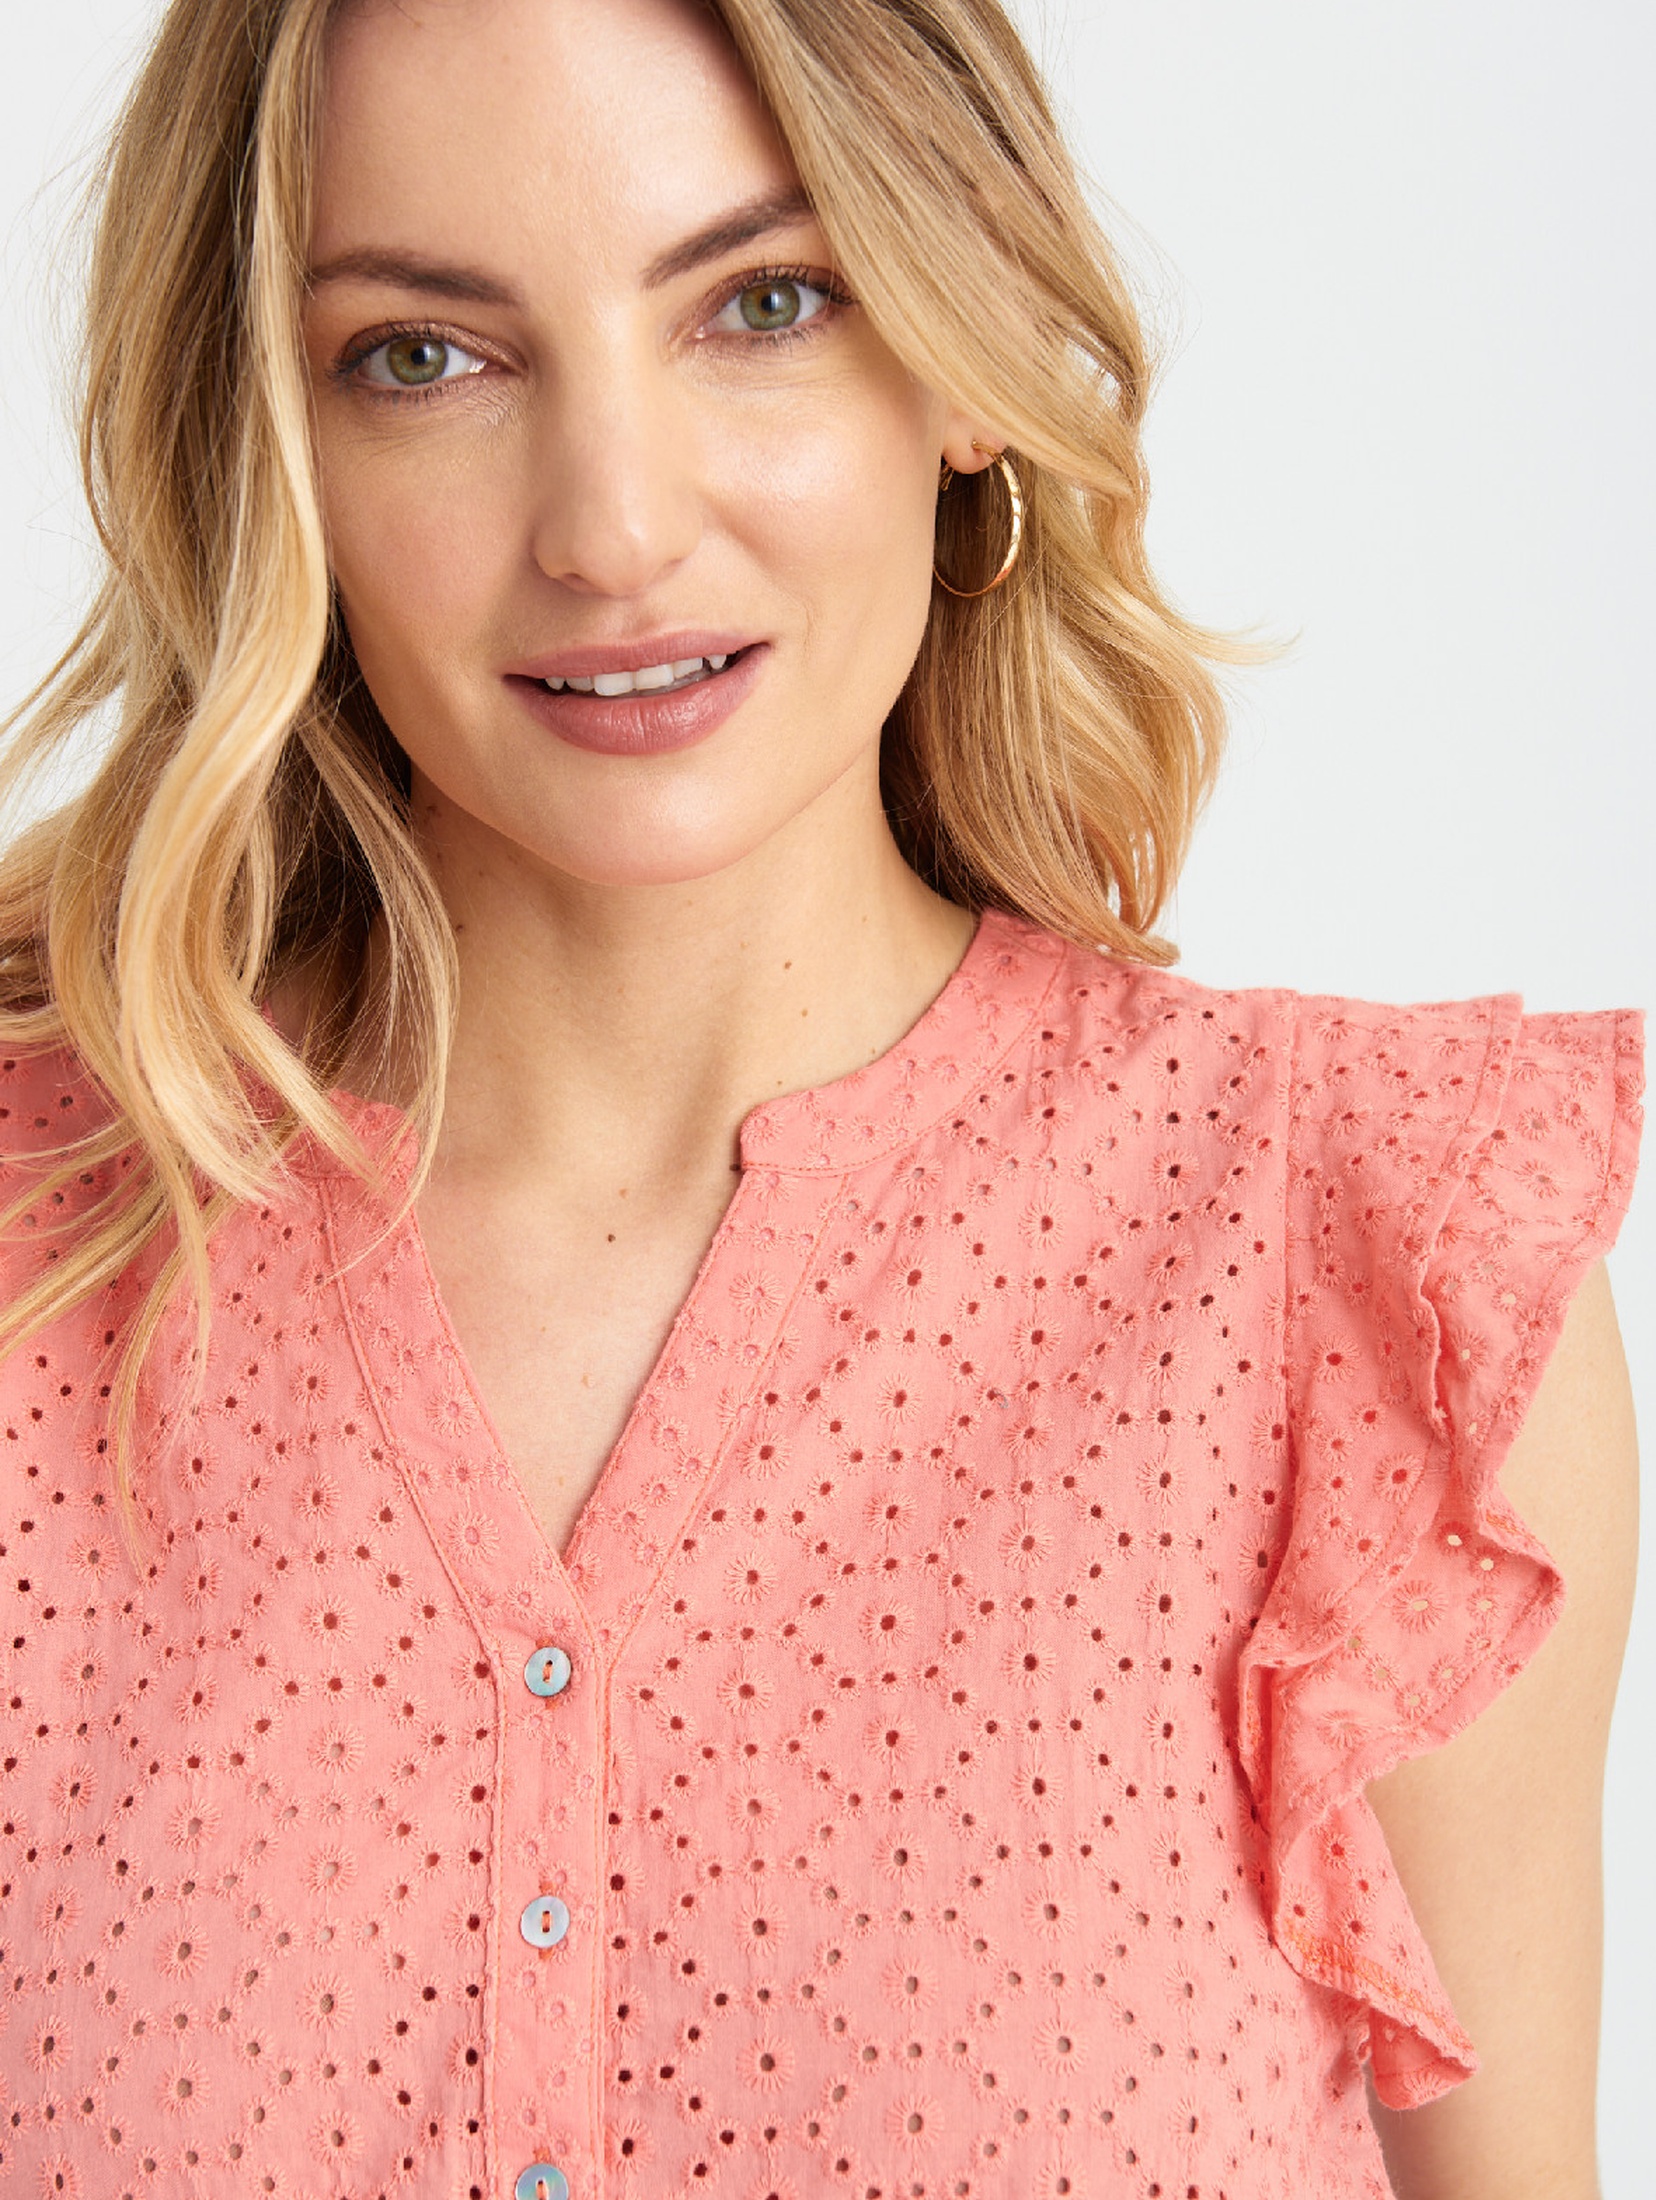 Różowa bluzka damska bawełniana z haftem- krótki rękaw